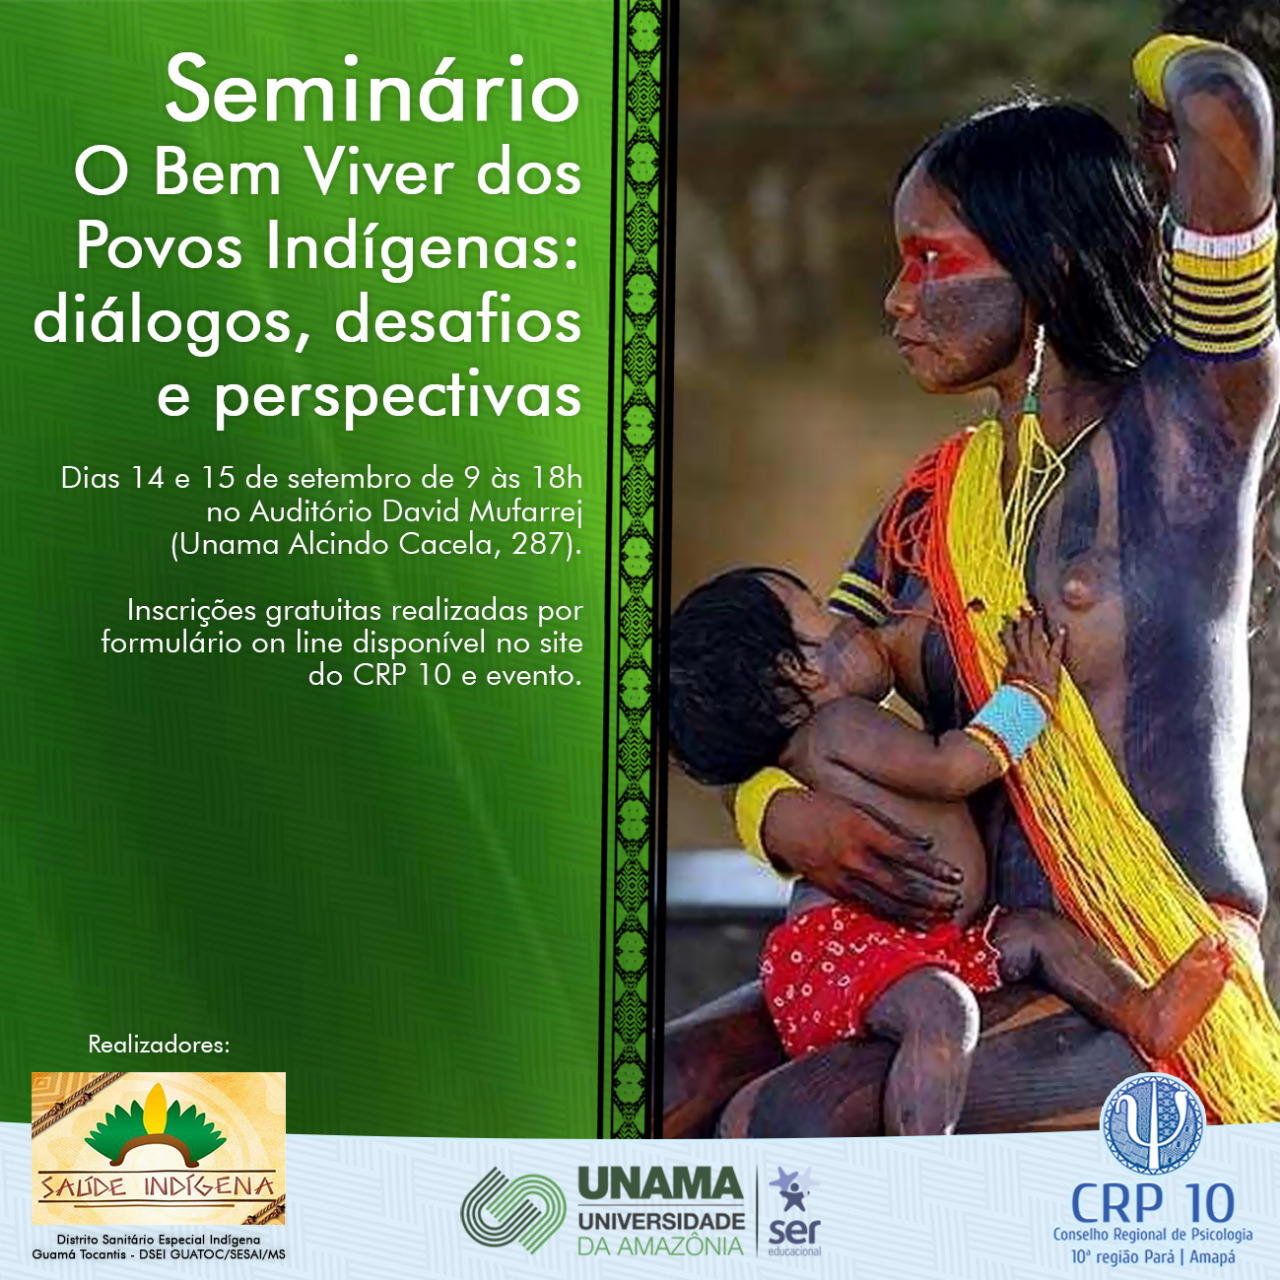 Seminário “O bem viver dos povos indígenas: diálogos, desafios e perspectivas” CRP 10ª Região/PA-AP